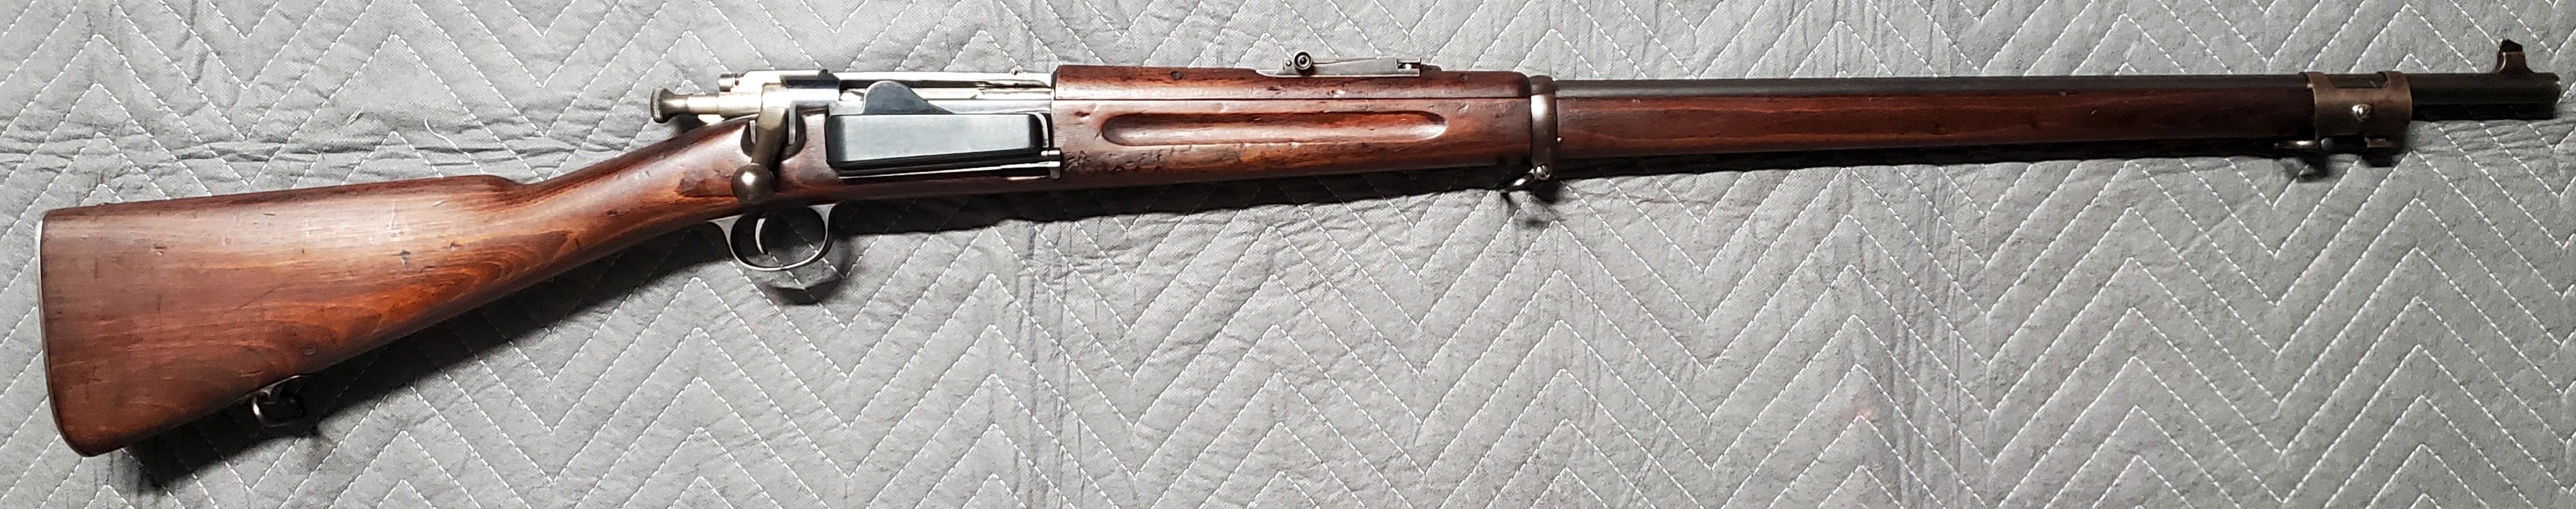 Krag Rifle3.jpg